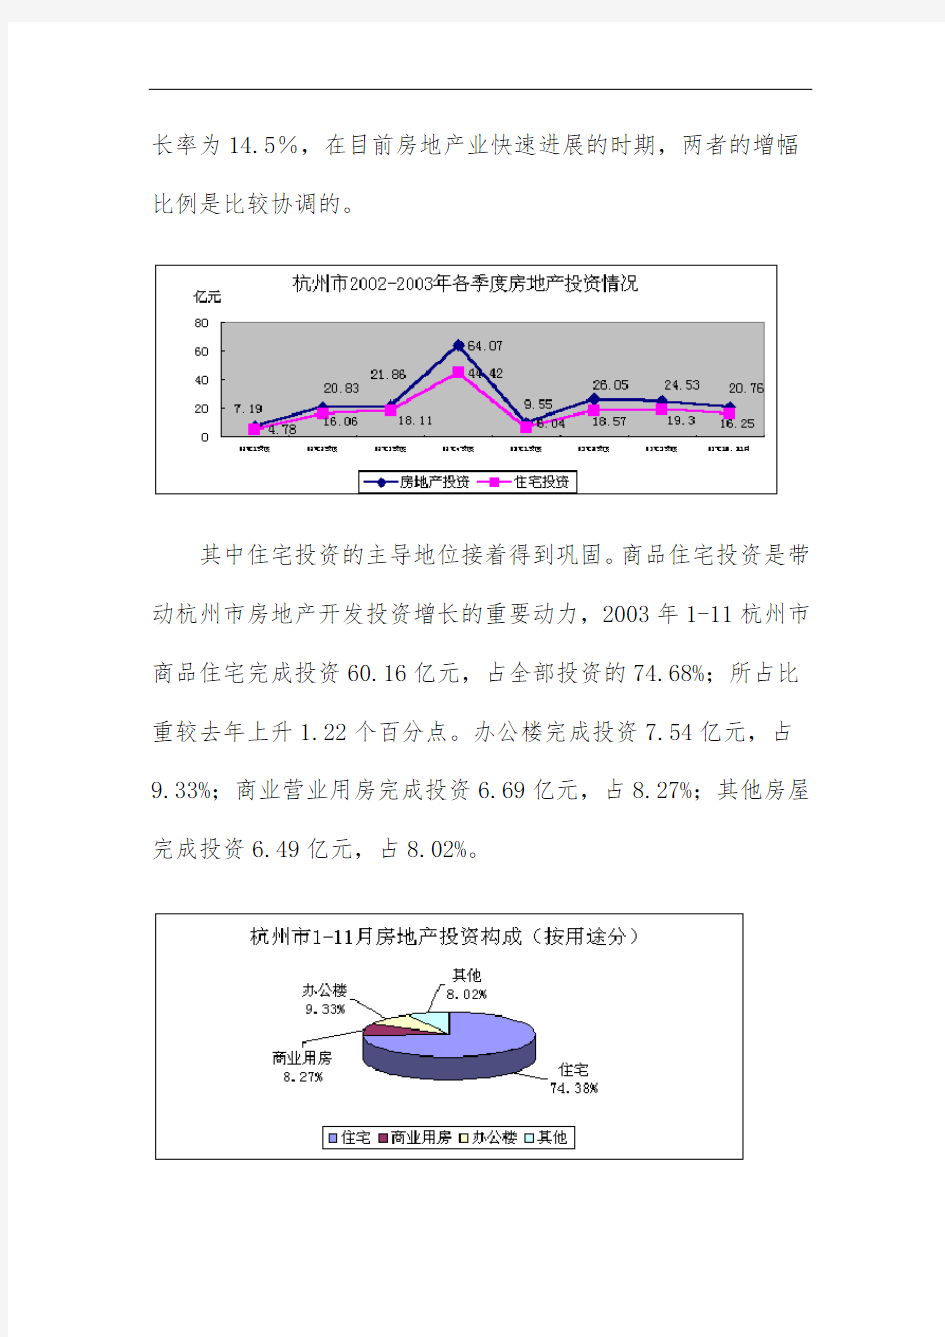 杭州市房地产市场分析汇报材料